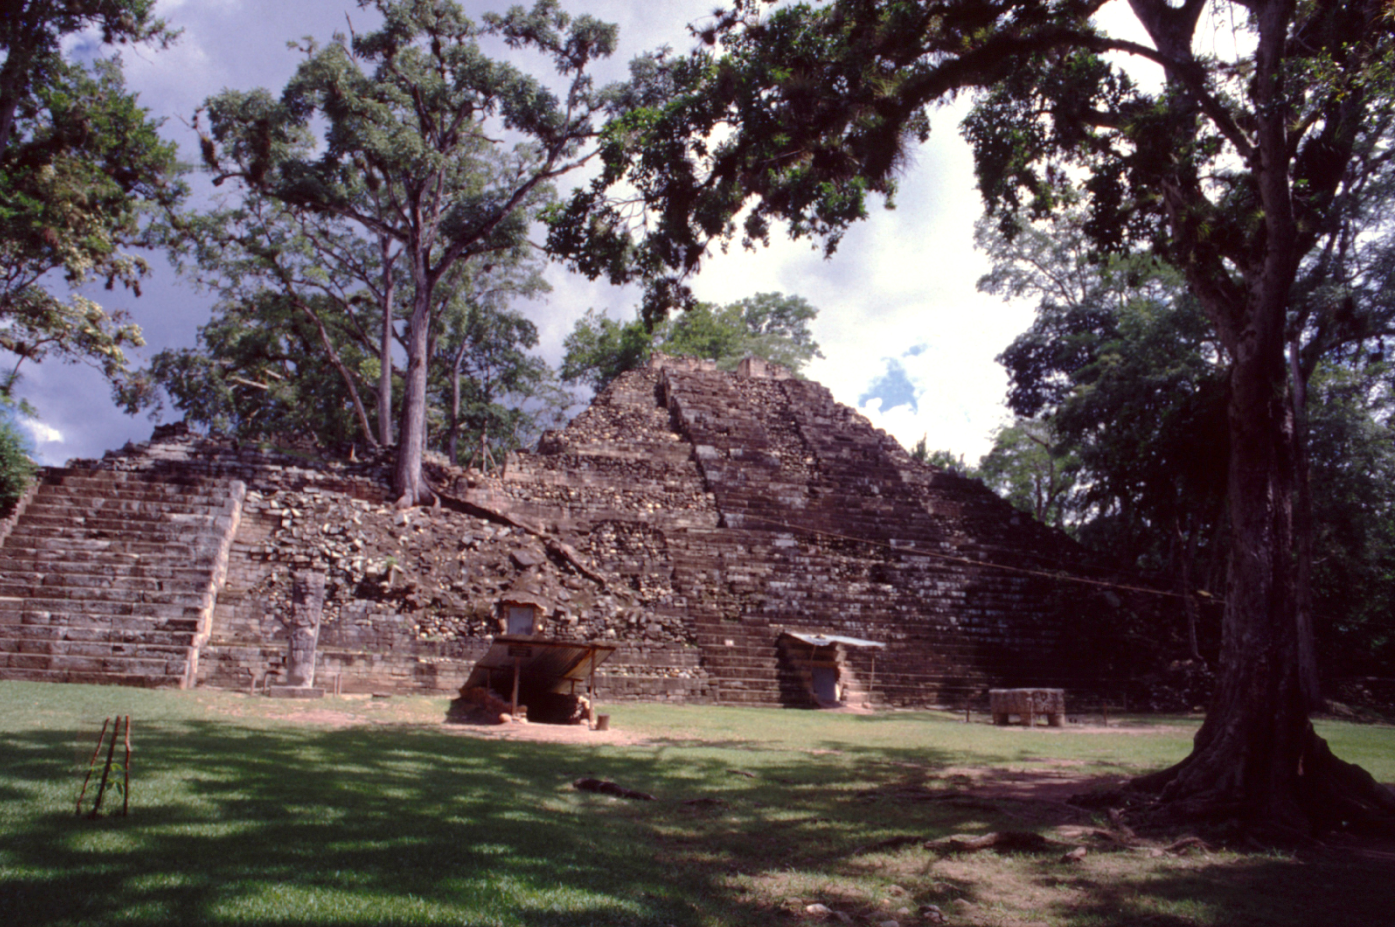 A la manière d’Angkor ou du Machu Picchu, les ruines de Copan étaient complètement recouvertes par la forêt tropicale avant les premières fouilles au XIXe siècle.